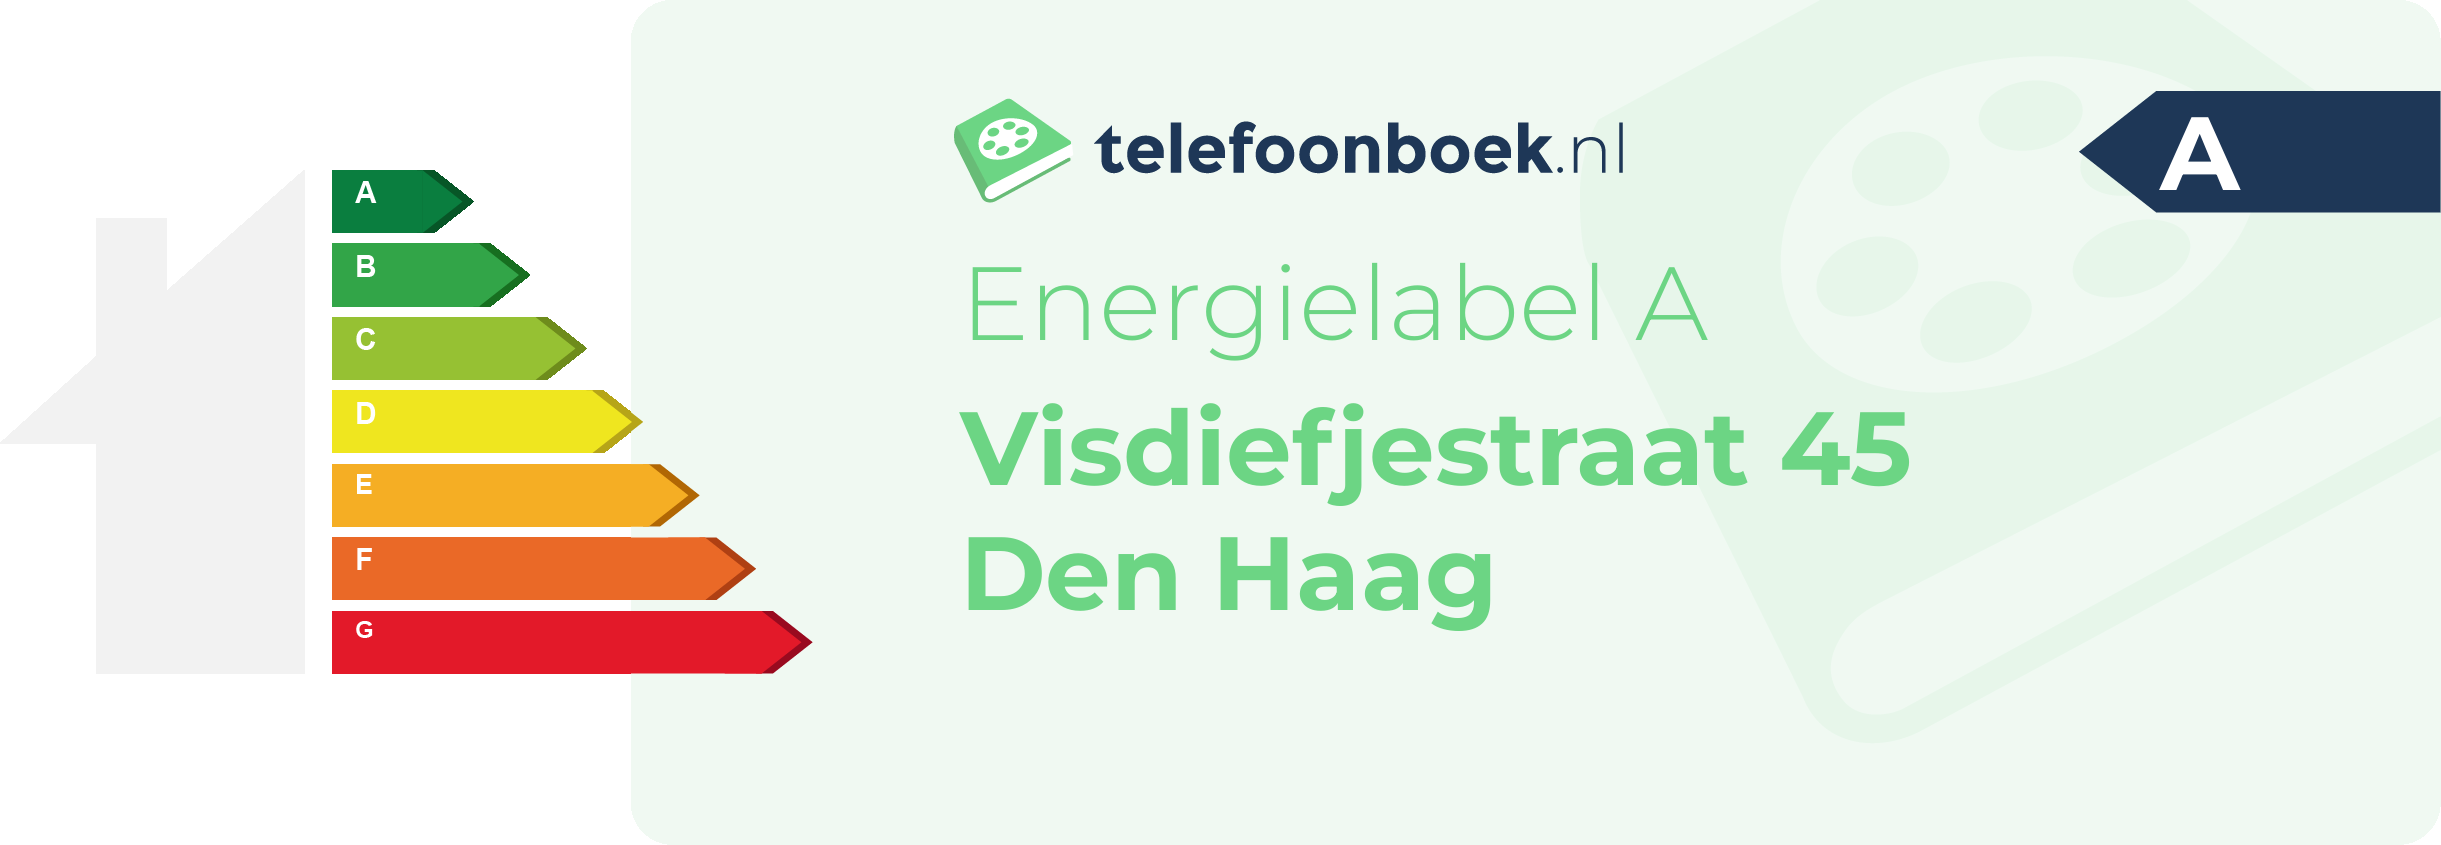 Energielabel Visdiefjestraat 45 Den Haag